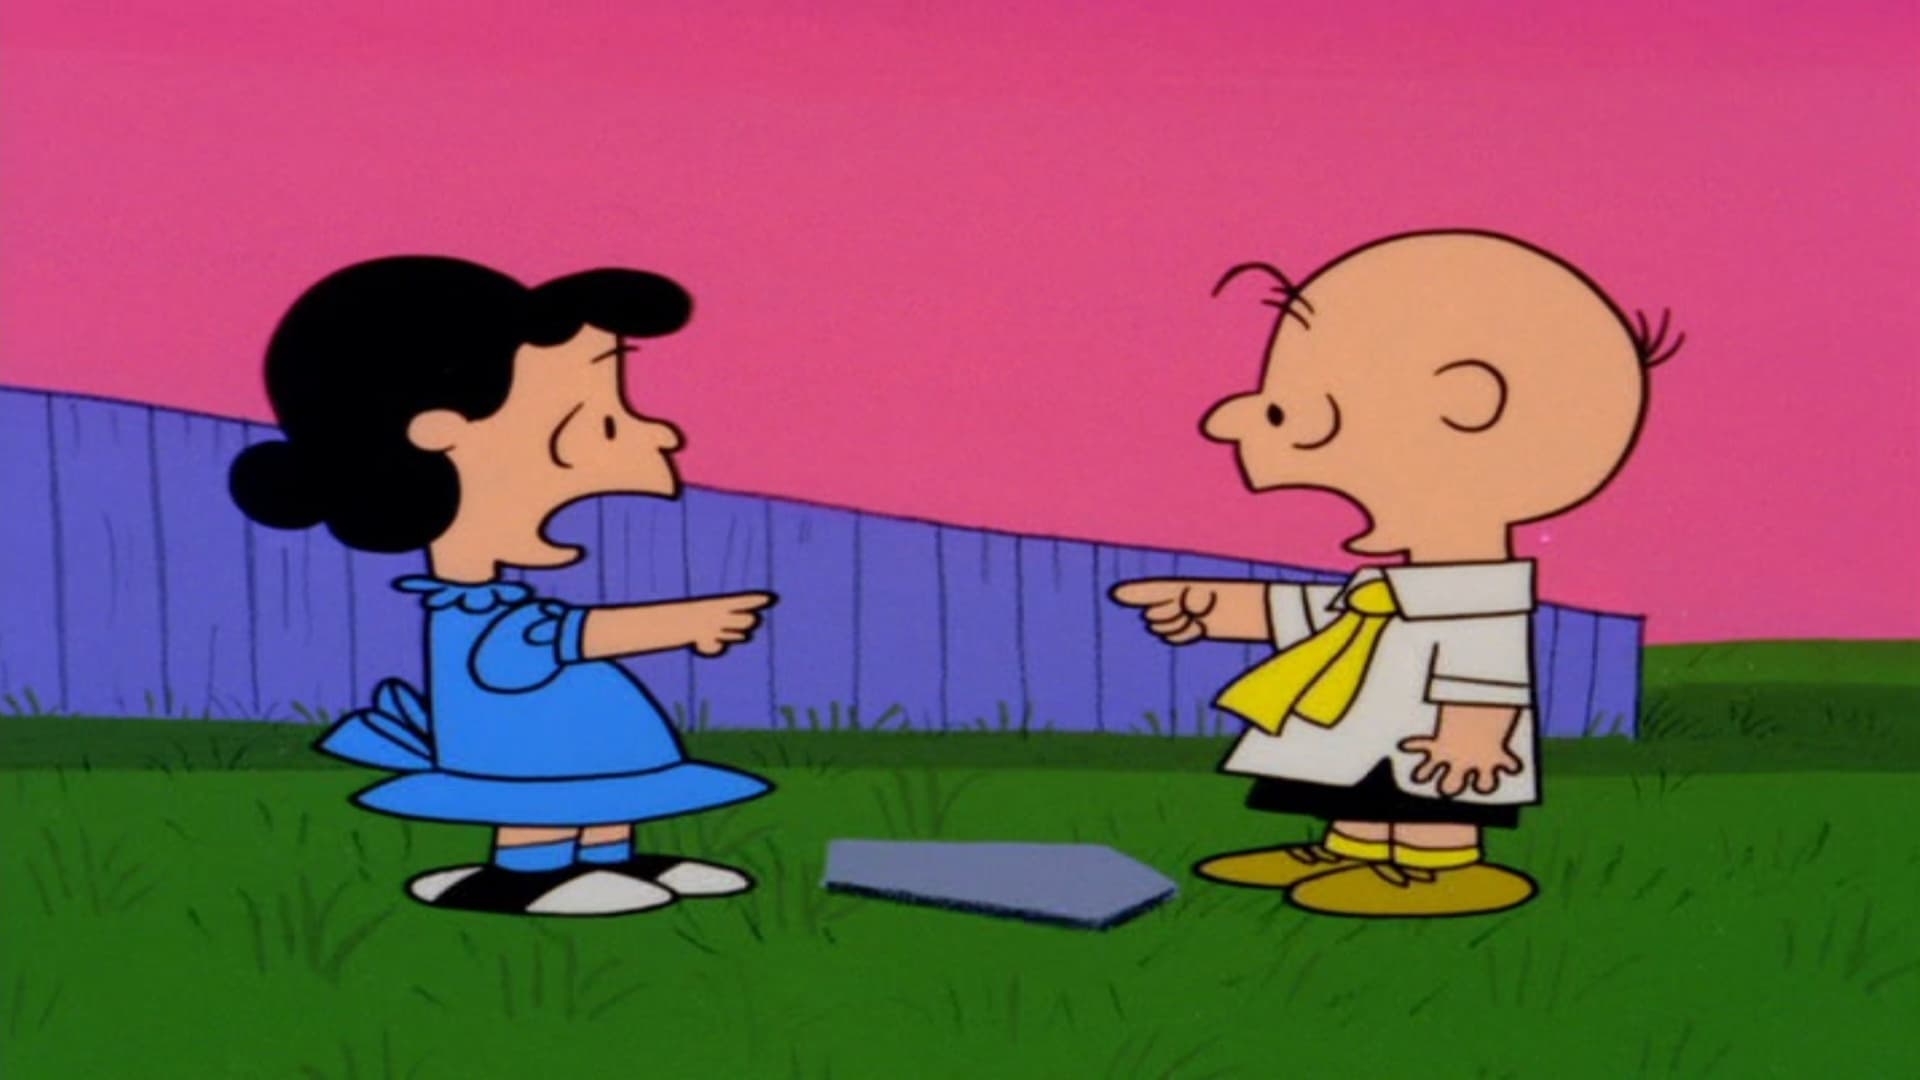 Hai preso una cotta, Charlie Brown! (1967)